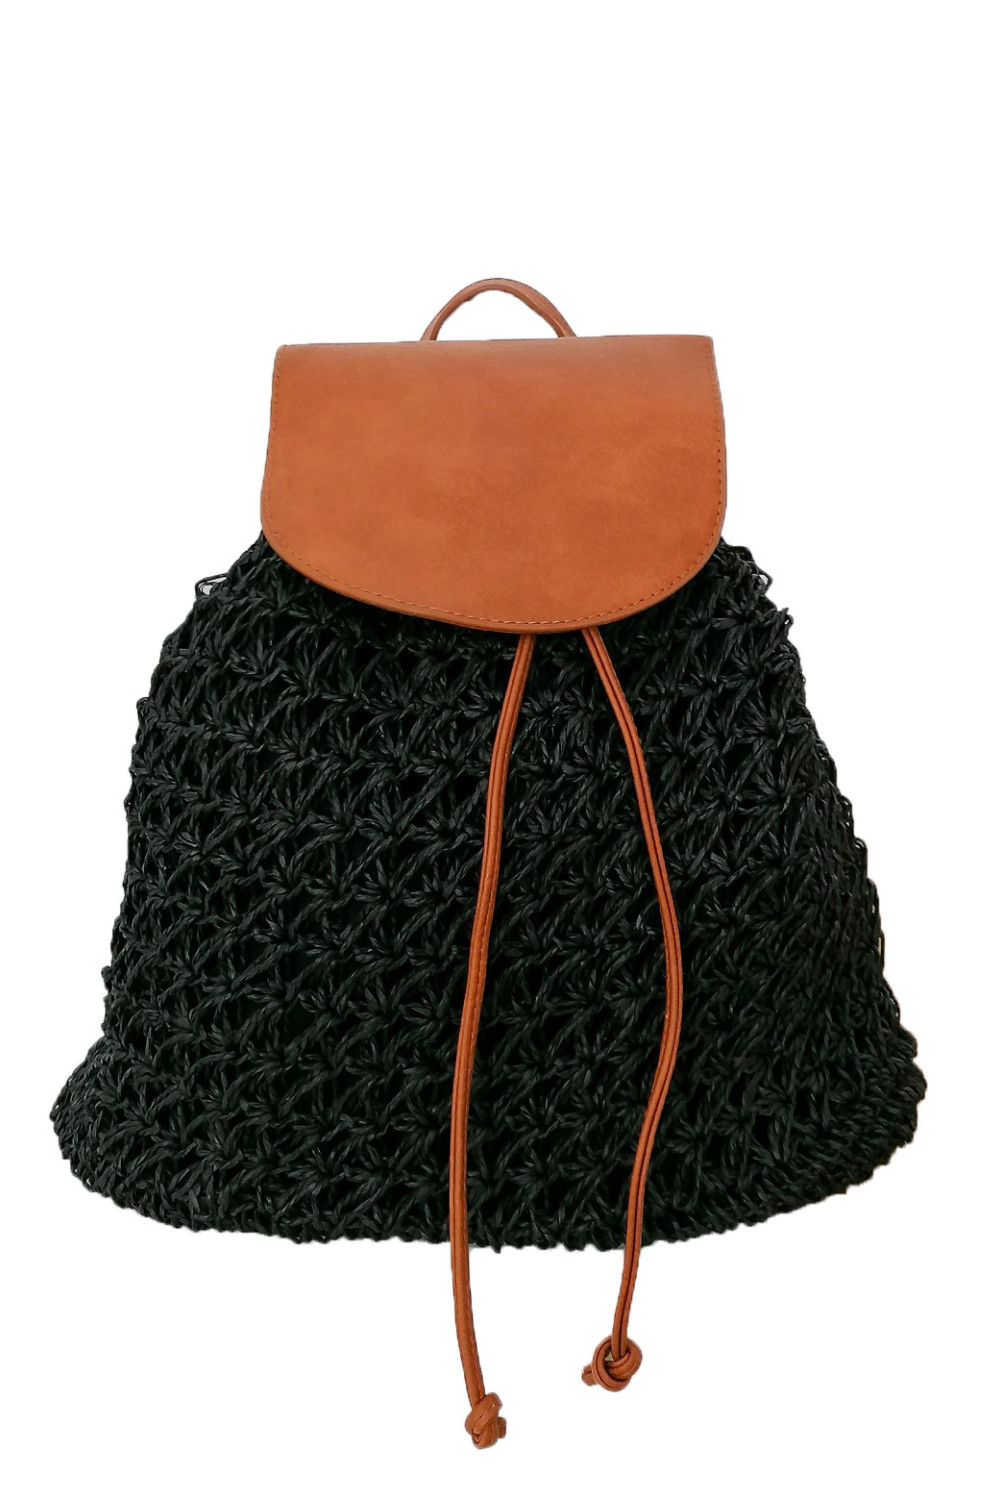 Γυναικεία μαύρη ψάθινη τσάντα πλάτης 2001660